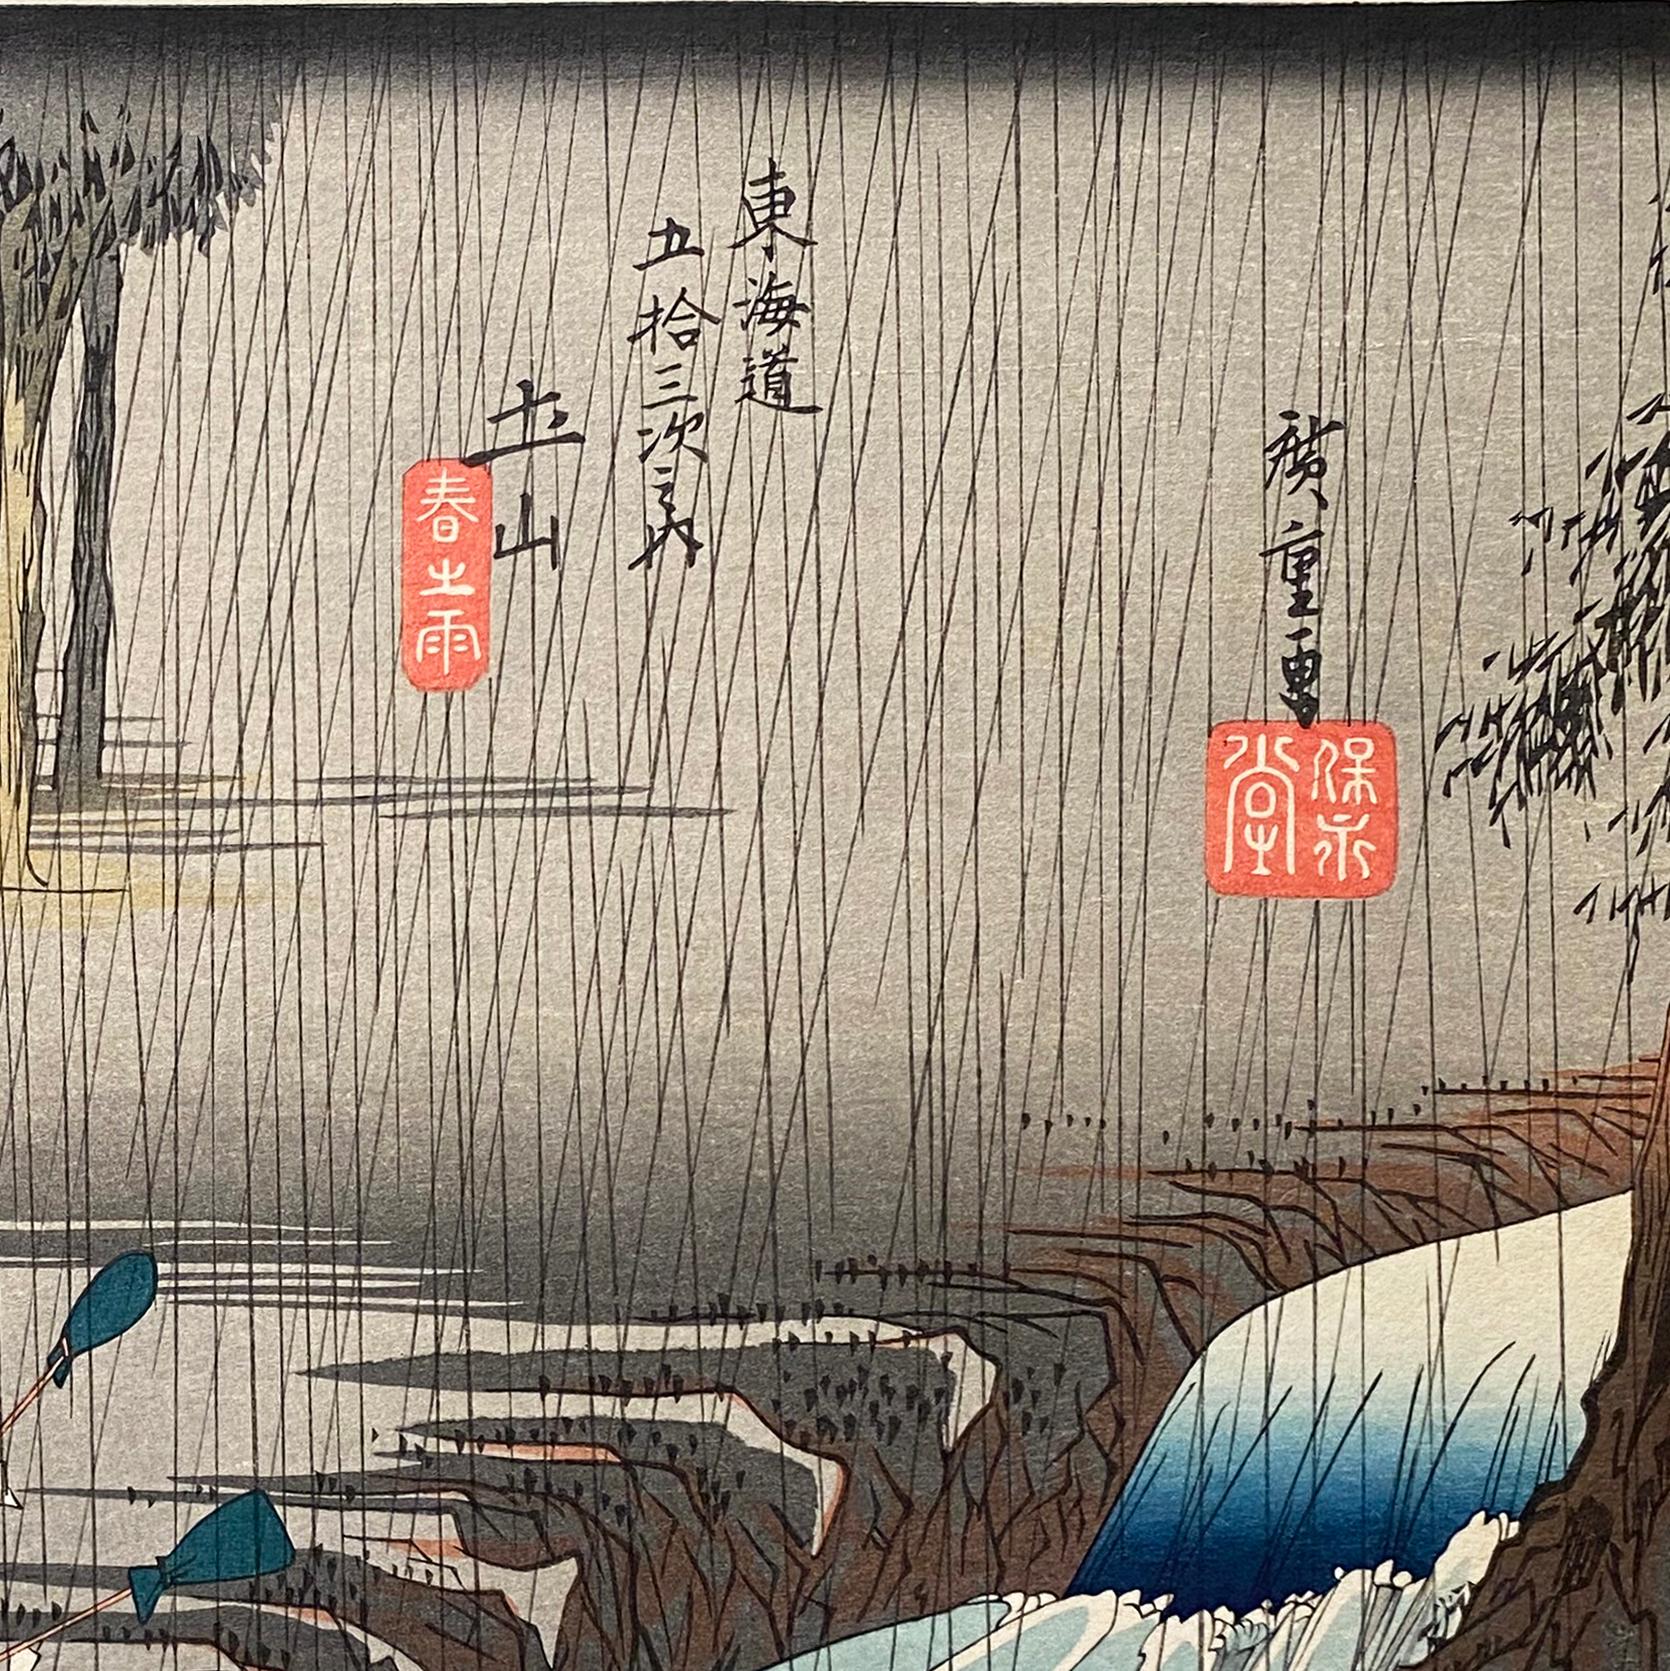 'A View of Tsuchiyama', After Utagawa Hiroshige 歌川廣重, Ukiyo-e Woodblock, Tokaido - Print by Utagawa Hiroshige (Ando Hiroshige)